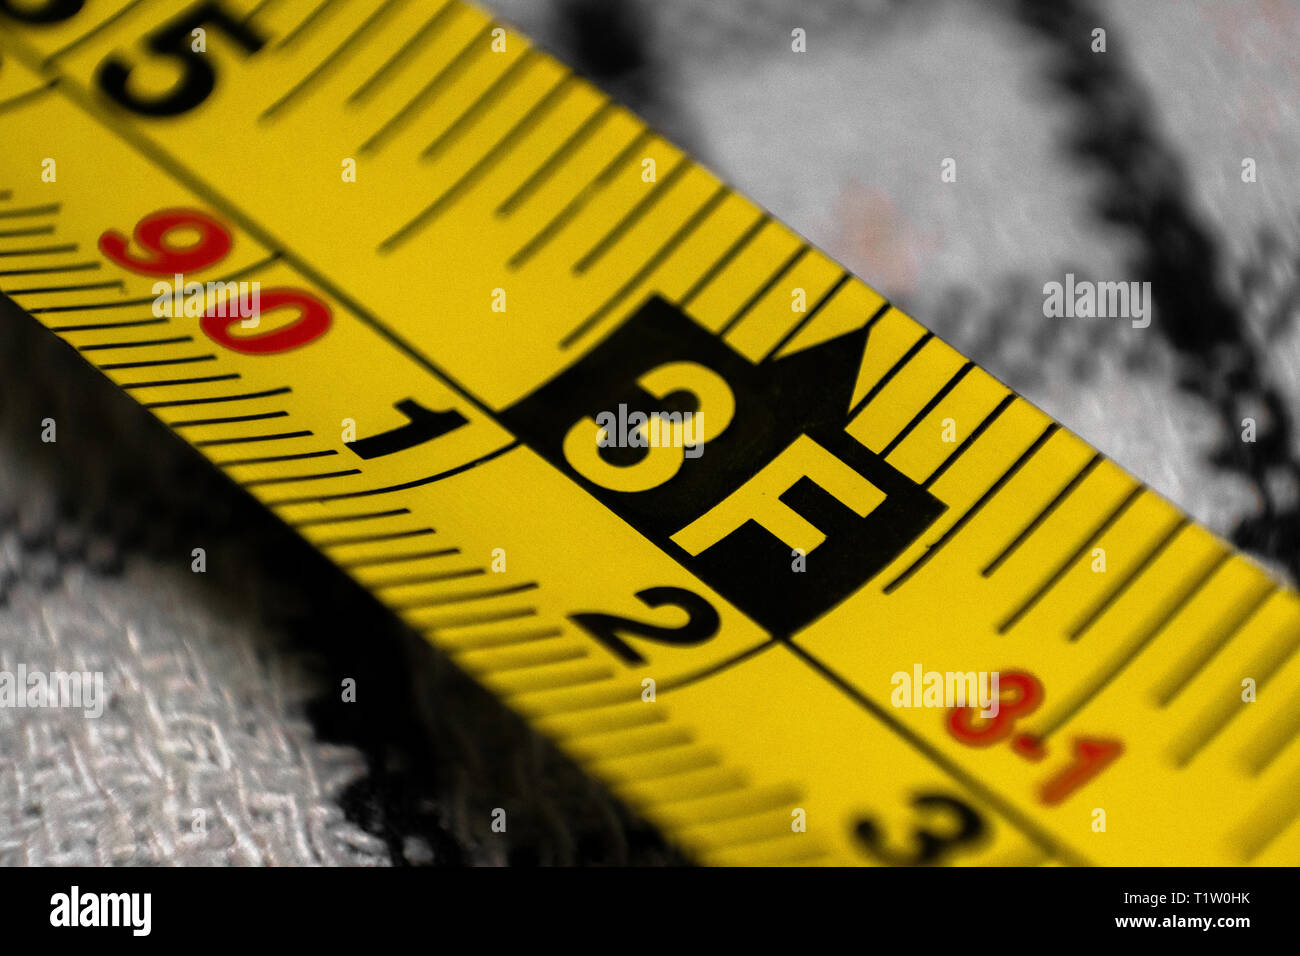 Gelbe Maßband zeigt die Messung in Meter und feet Stockfotografie - Alamy